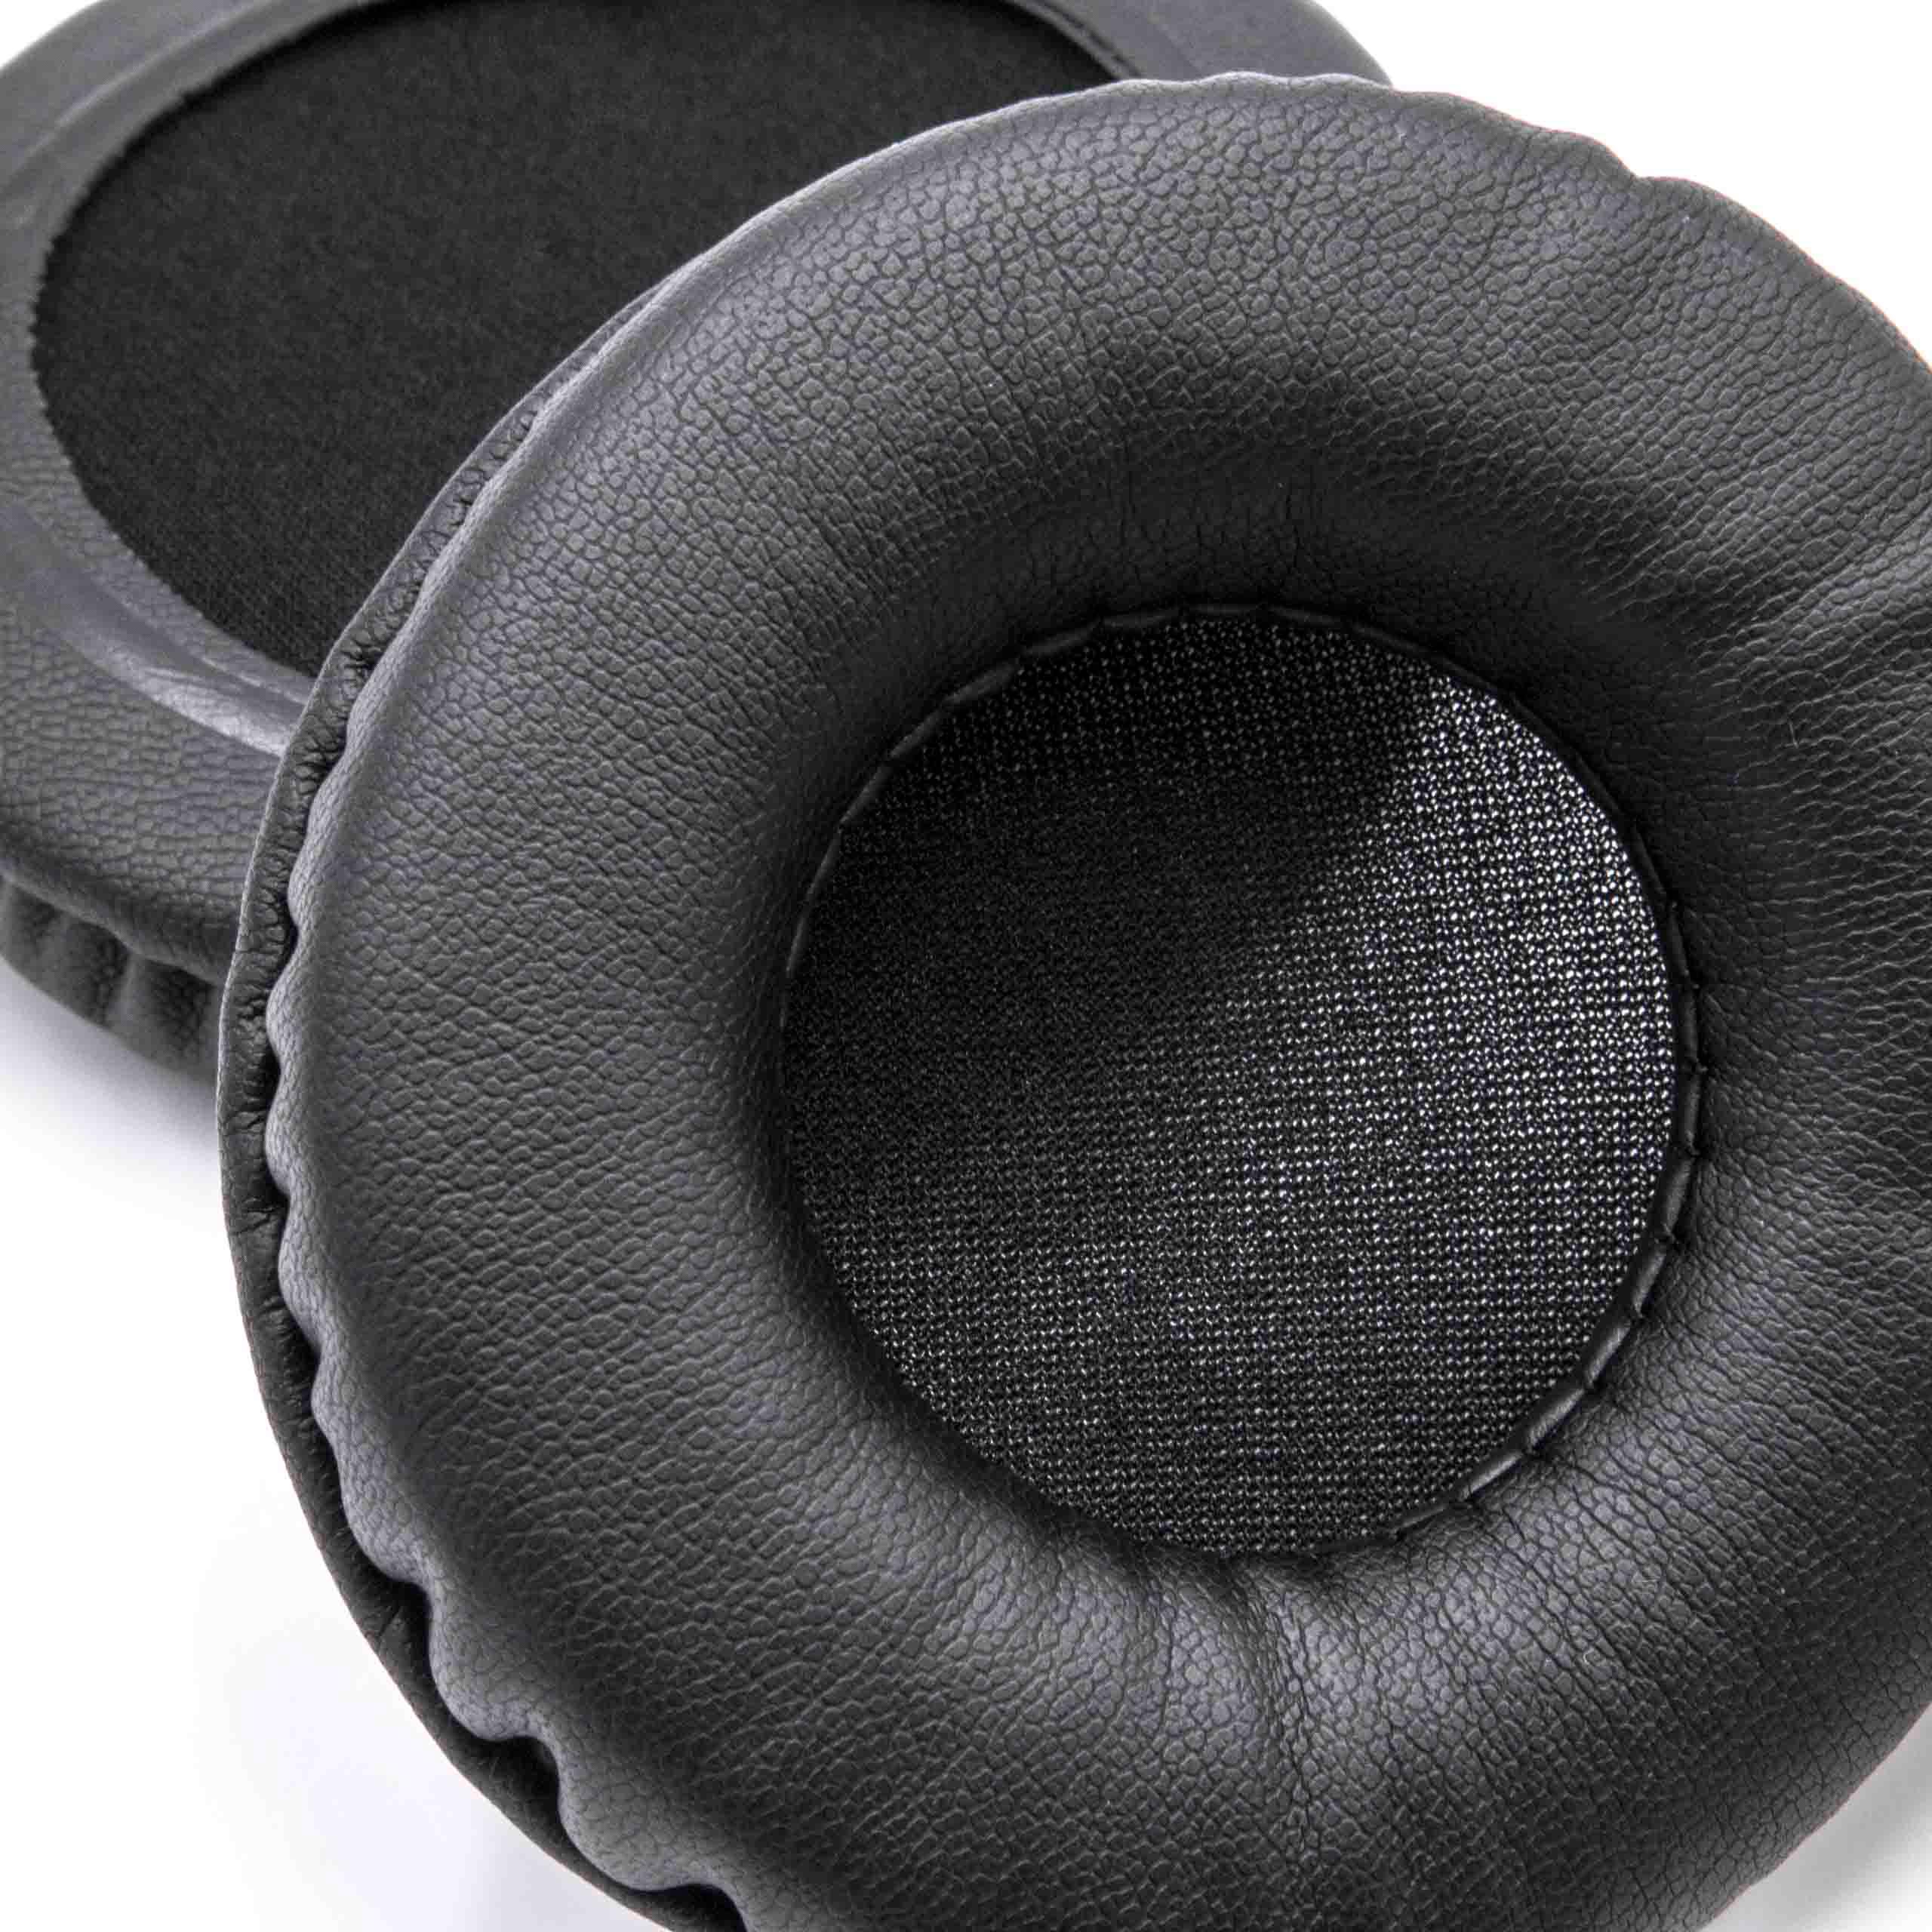 2x Ohrenpolster passend für Kopfhörer, die 80mm Ohrpolster benötigen / Audio Technica / Sony ATH-WS70 Kopfhöre